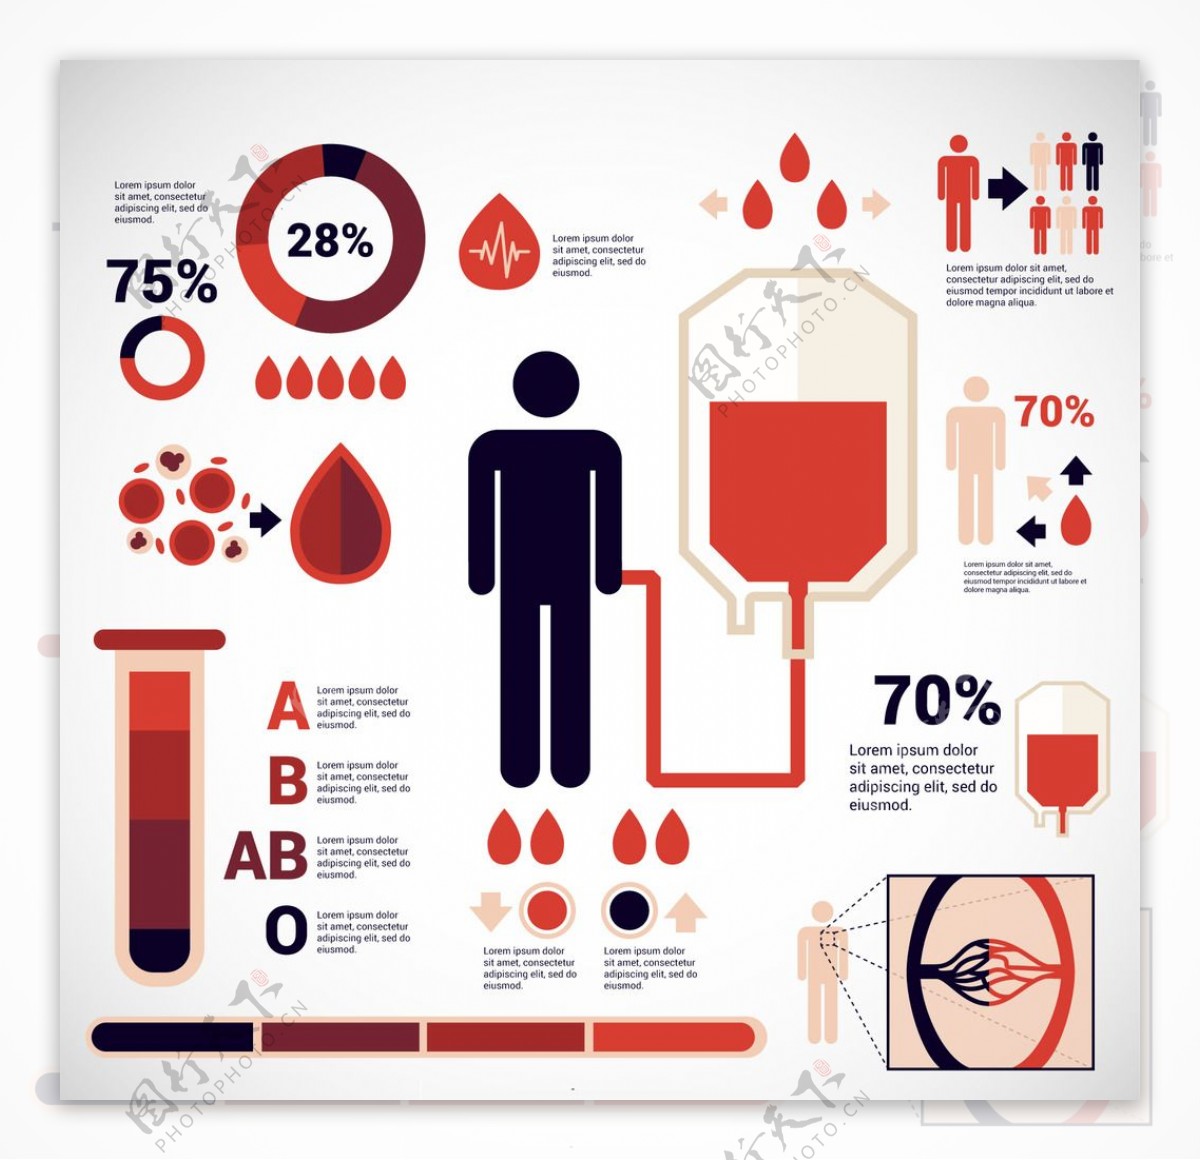 献血信息图表